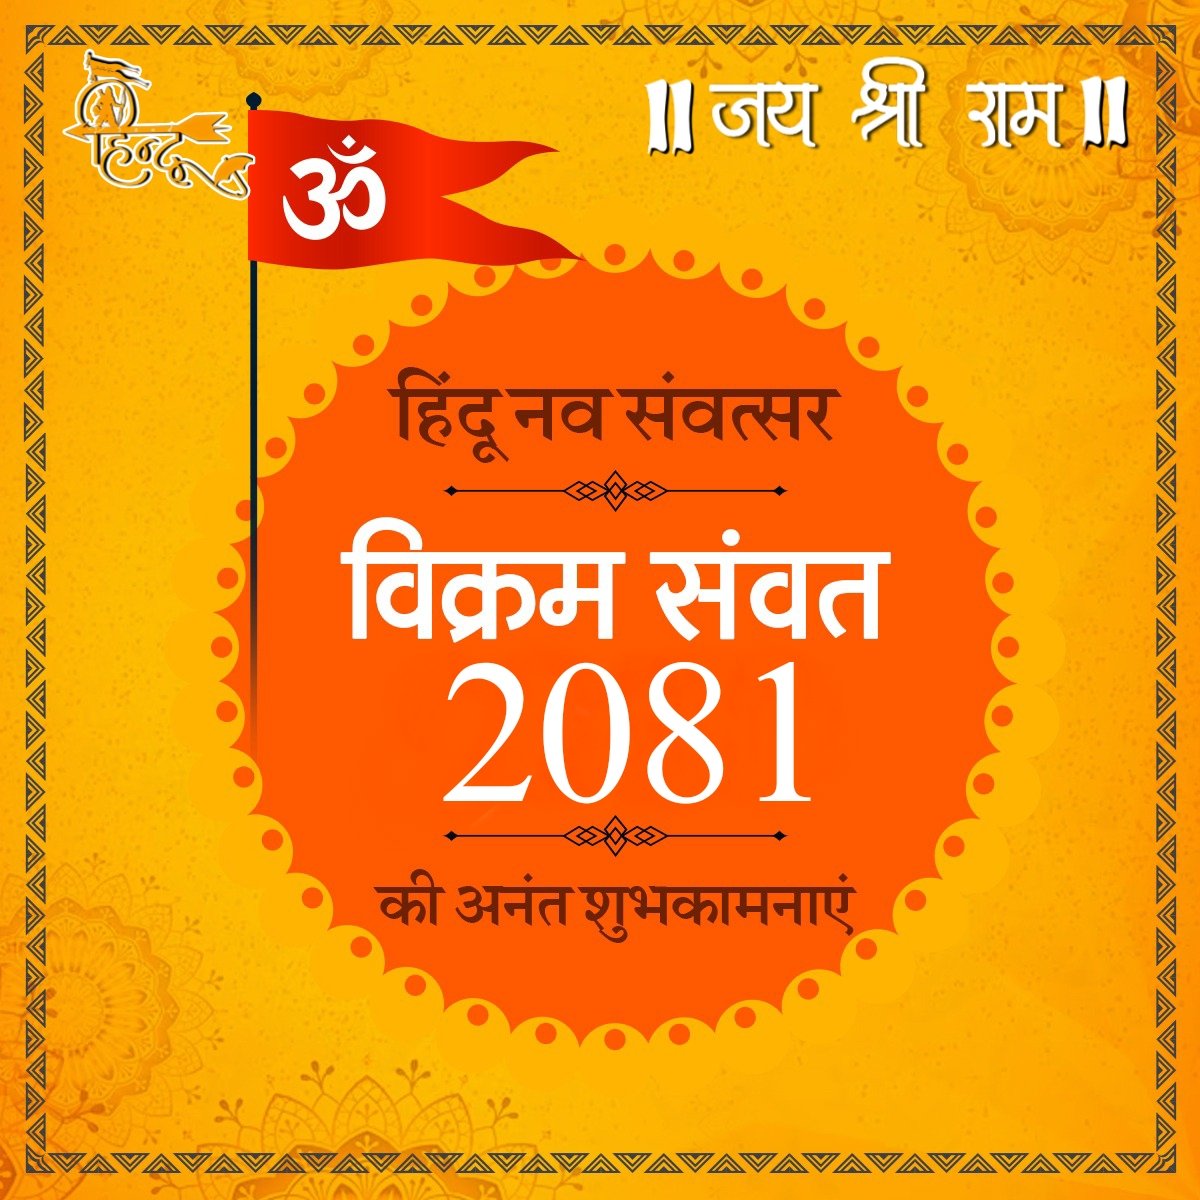 आप सभी को हिन्दू नववर्ष की शुभकामनाएं। देश के लिए और सम्पूर्ण मानवता के लिए यह नूतन वर्ष विक्रम संवत 2081 नई उम्मीदों, सुख-शांति और समृद्धि का वर्ष हो। #HinduNavVarsh